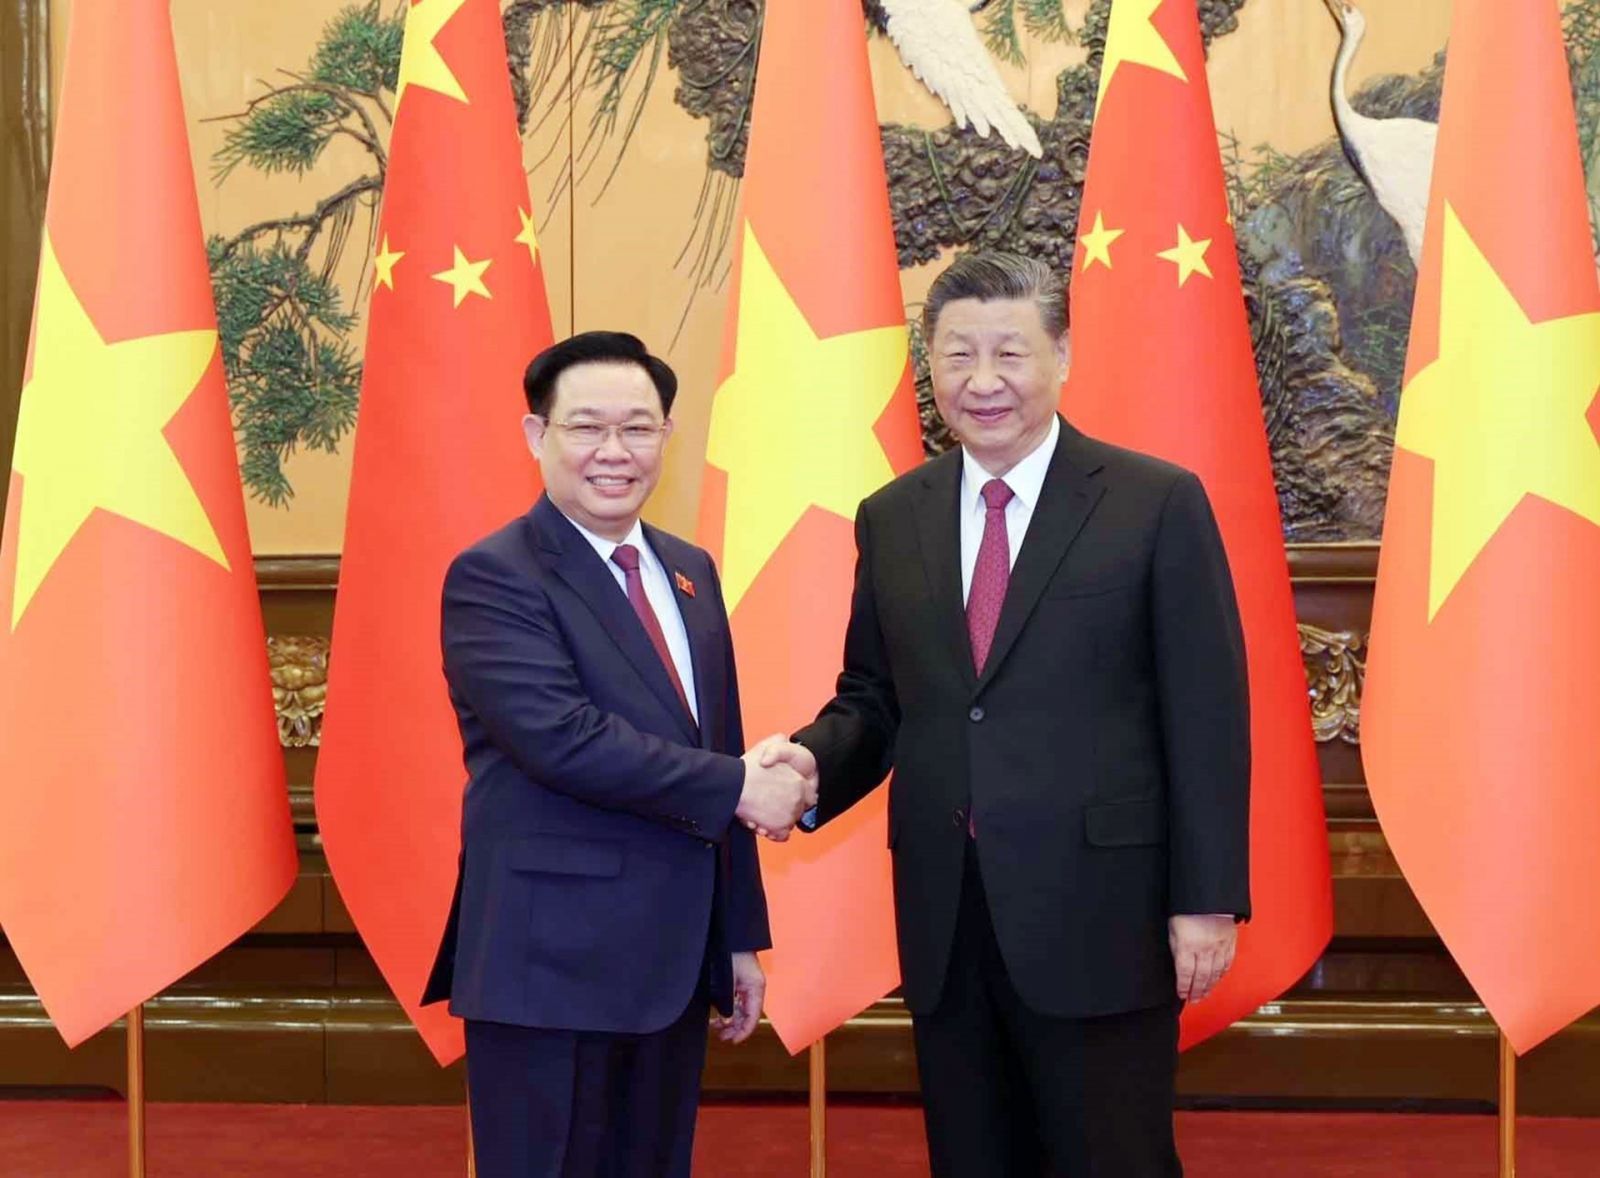 Chủ tịch Quốc hội Vương Đình Huệ đã hội kiến đồng chí Tập Cận Bình, Tổng Bí thư Ban Chấp hành Trung ương Đảng Cộng sản Trung Quốc, Chủ tịch nước Cộng hòa nhân dân Trung Hoa